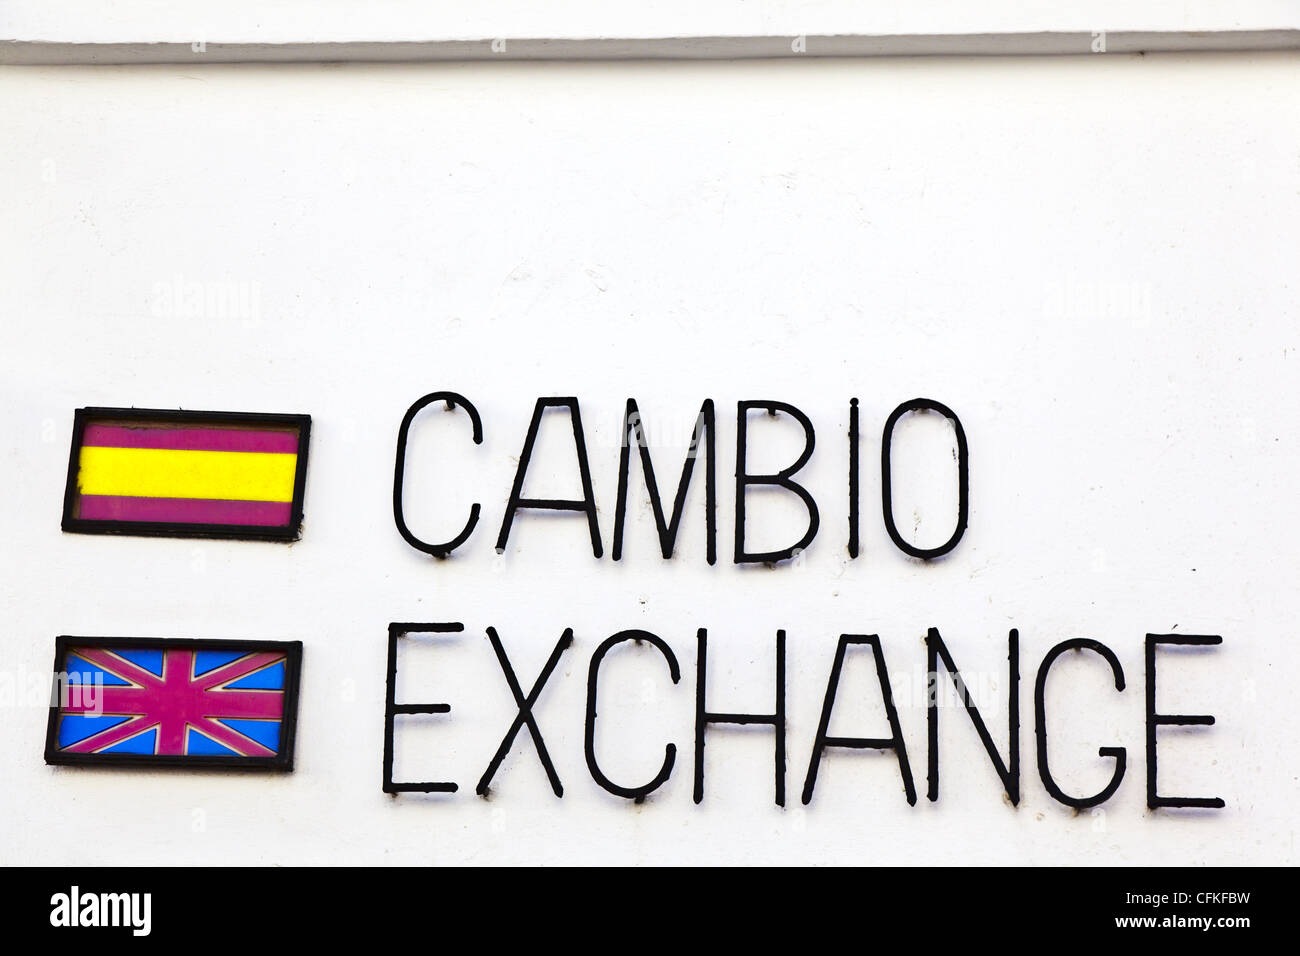 Money exchange bureau sign, Spanish and English Stock Photo